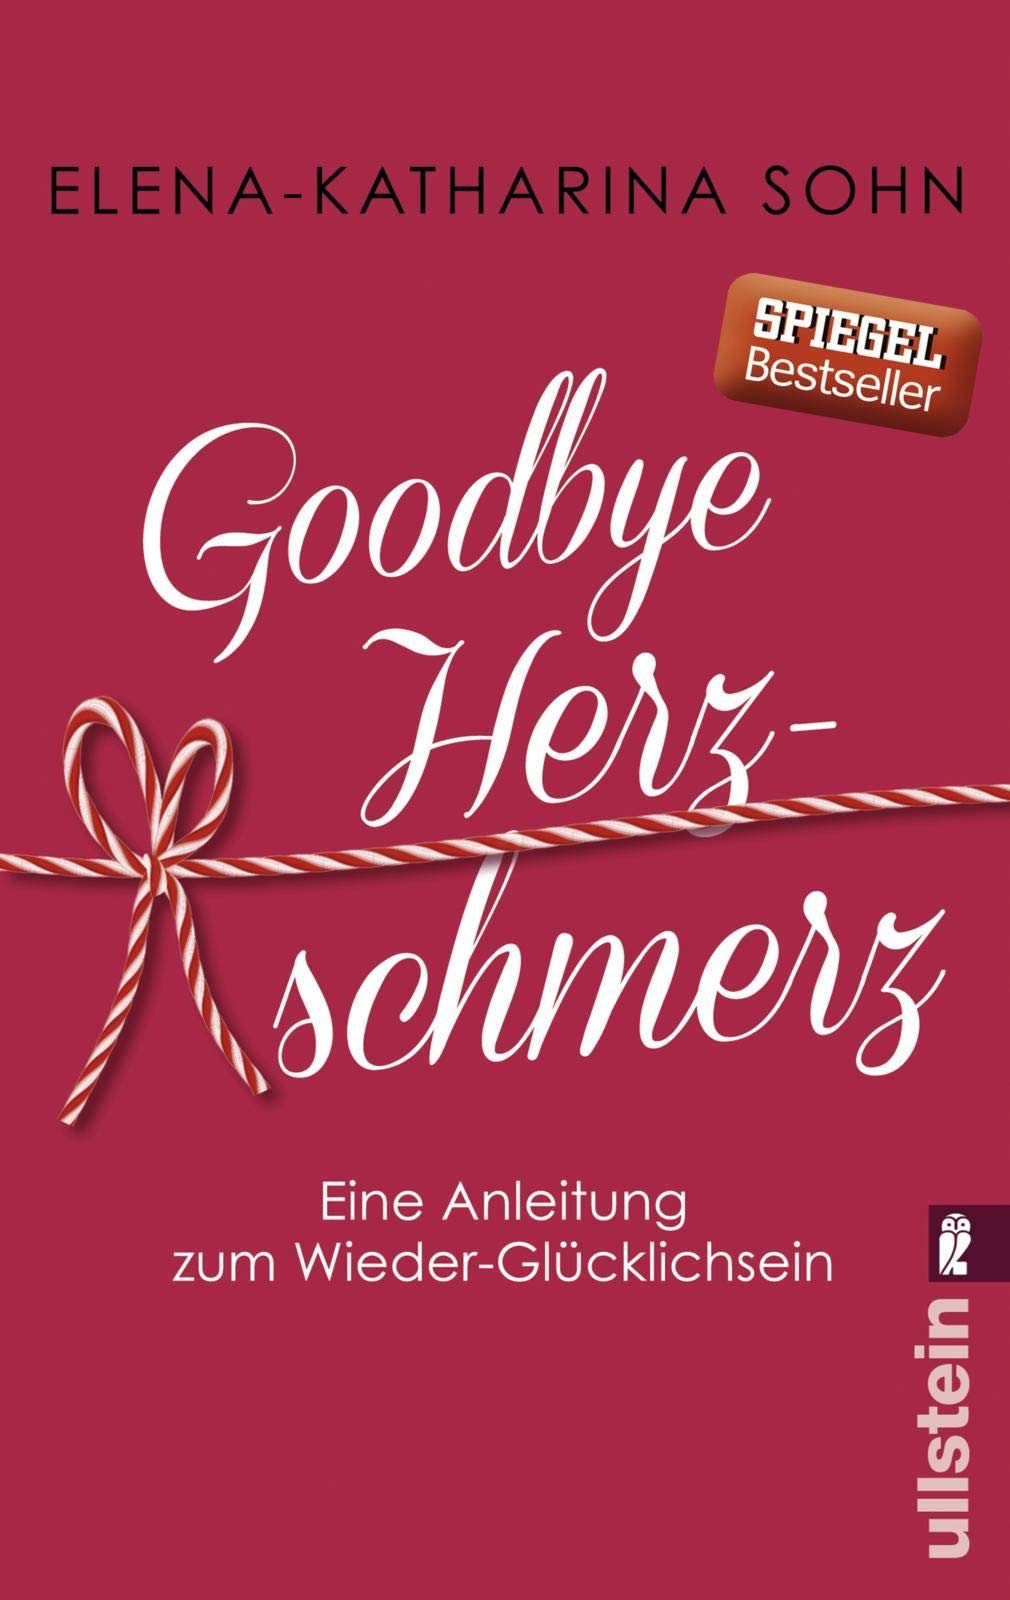 Buch: Goodbye Herzschmerz - Eine Anleitung zum Wieder-Glücklichsein (Amazon)